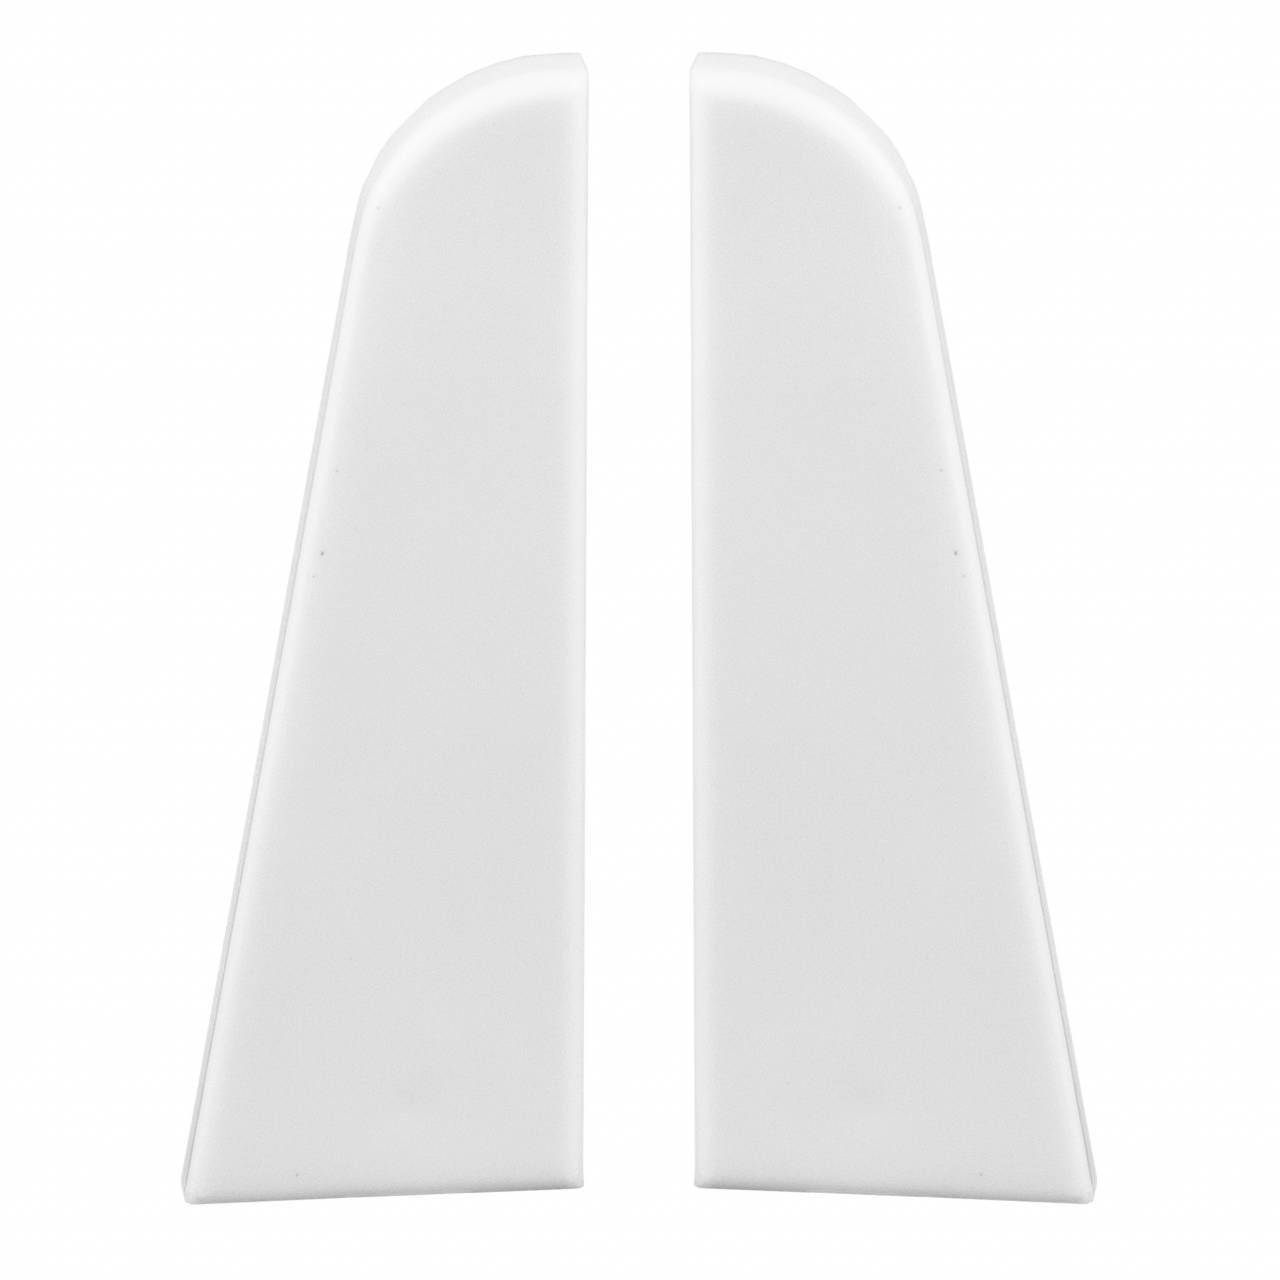 PROVISTON Sockelleisten-Endkappe Endkappen für MDF-Sockelleisten, 19 x 58 mm, Kunststoff, Weiß